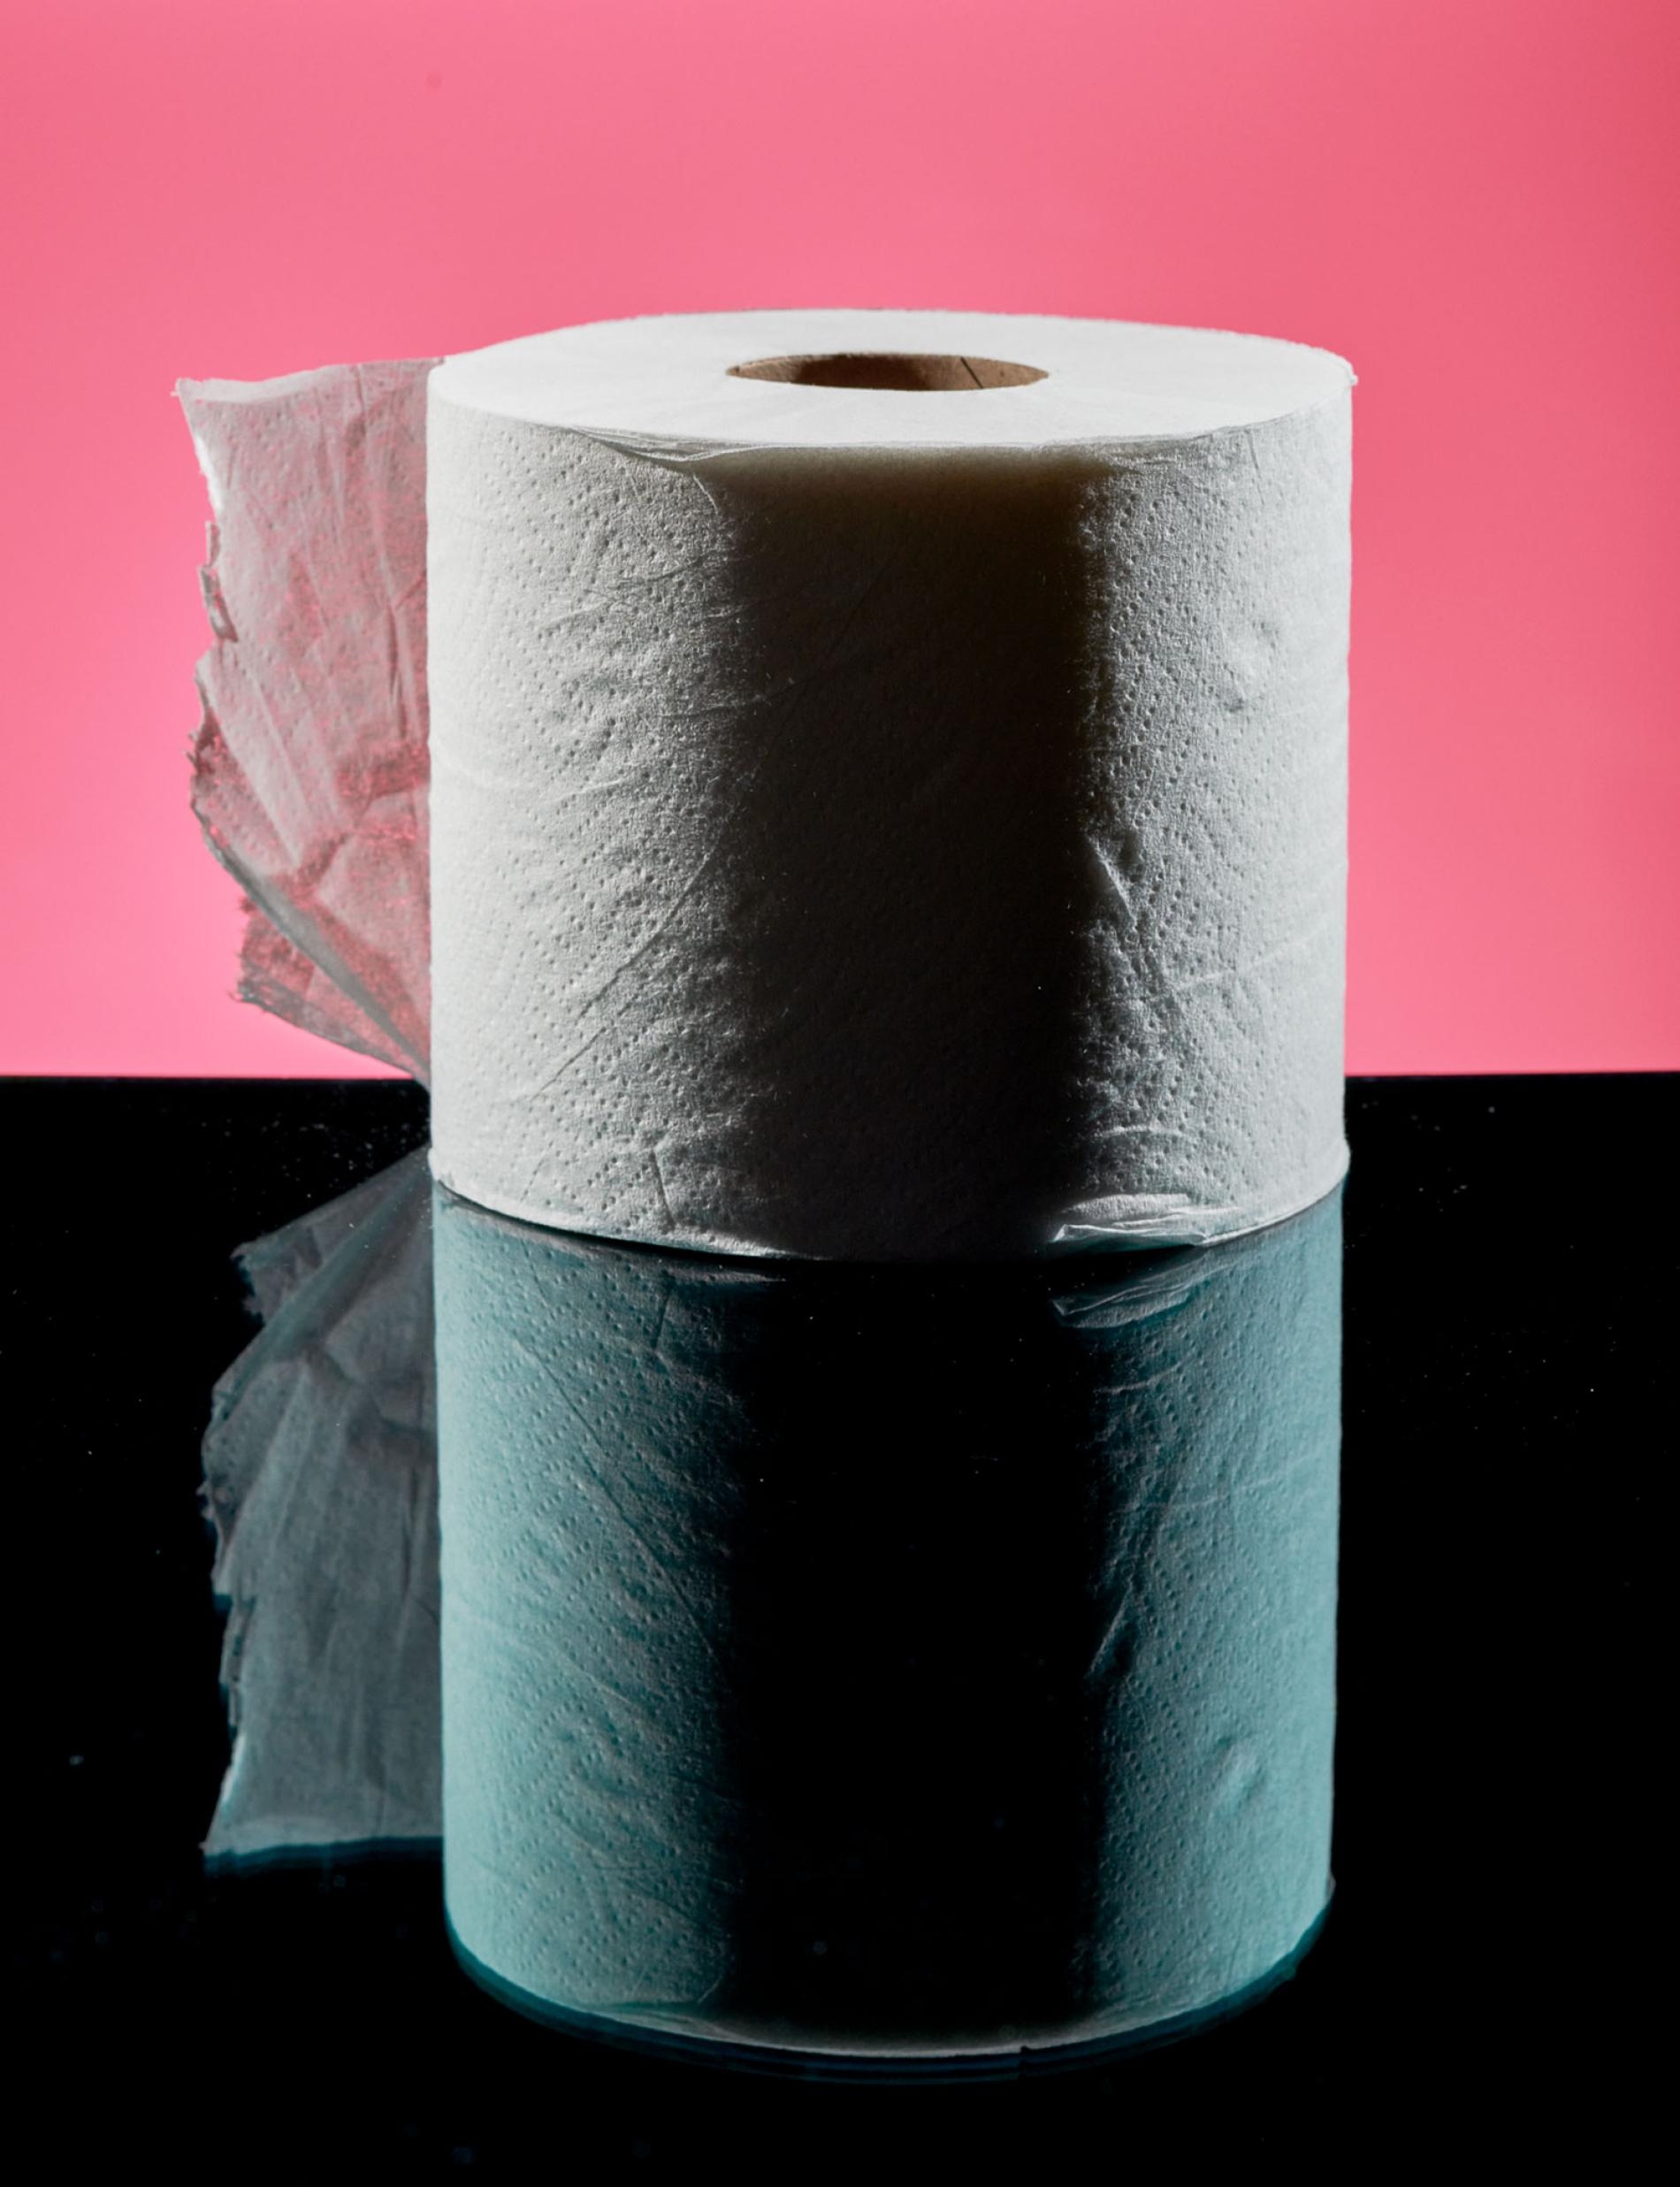 衛生紙的大規模量產始於1857年的美國，但世界各地的人們在不同的時代已經為了上廁所採行過各種方法。PHOTOGRAPH BY HANNAH WHITAKER